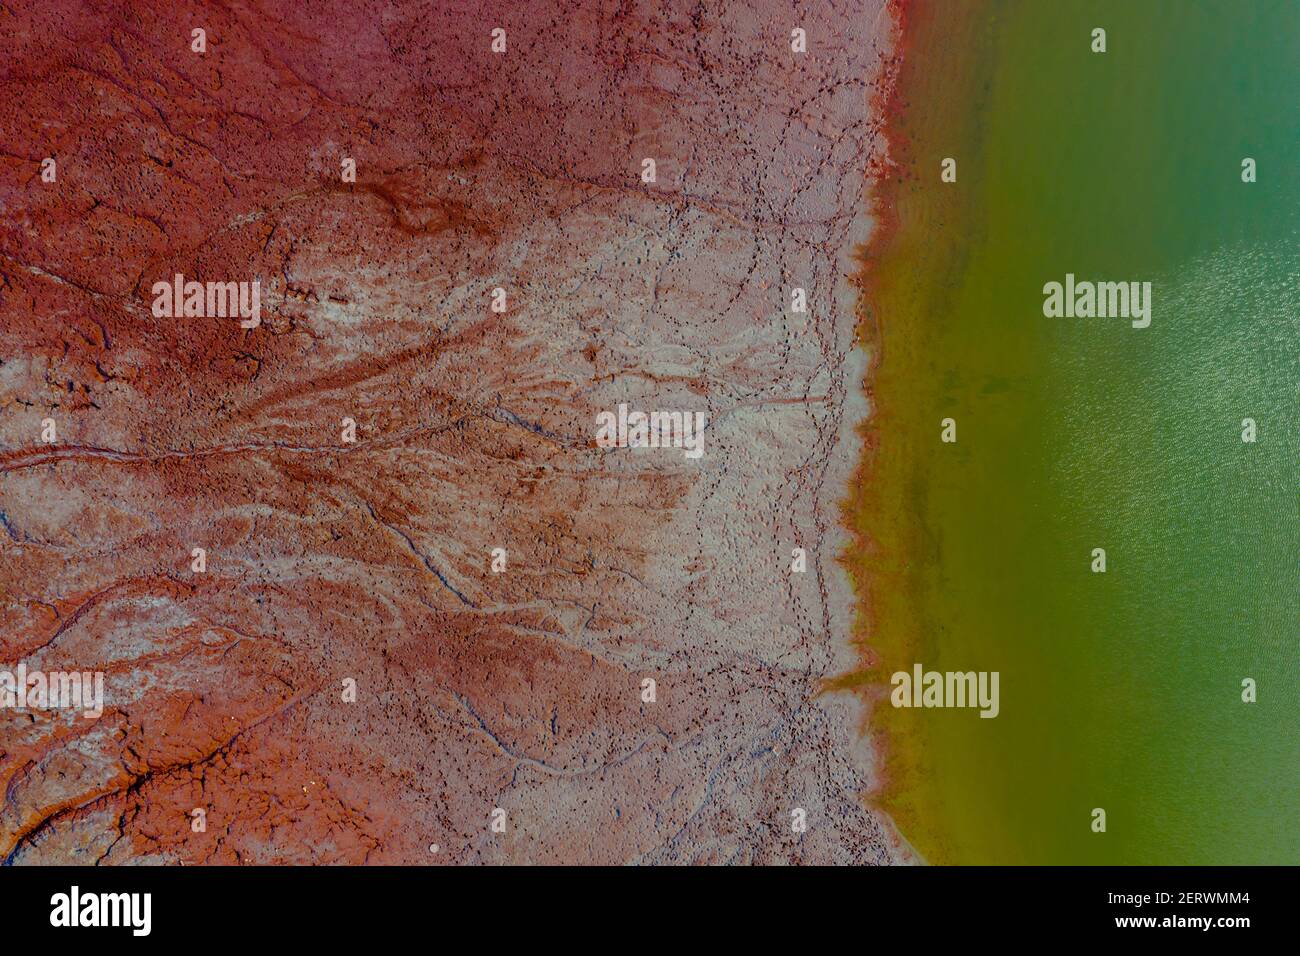 Vue aérienne d'un réservoir rempli de boues toxiques rouges. Hongrie - stockage de boue rouge Banque D'Images